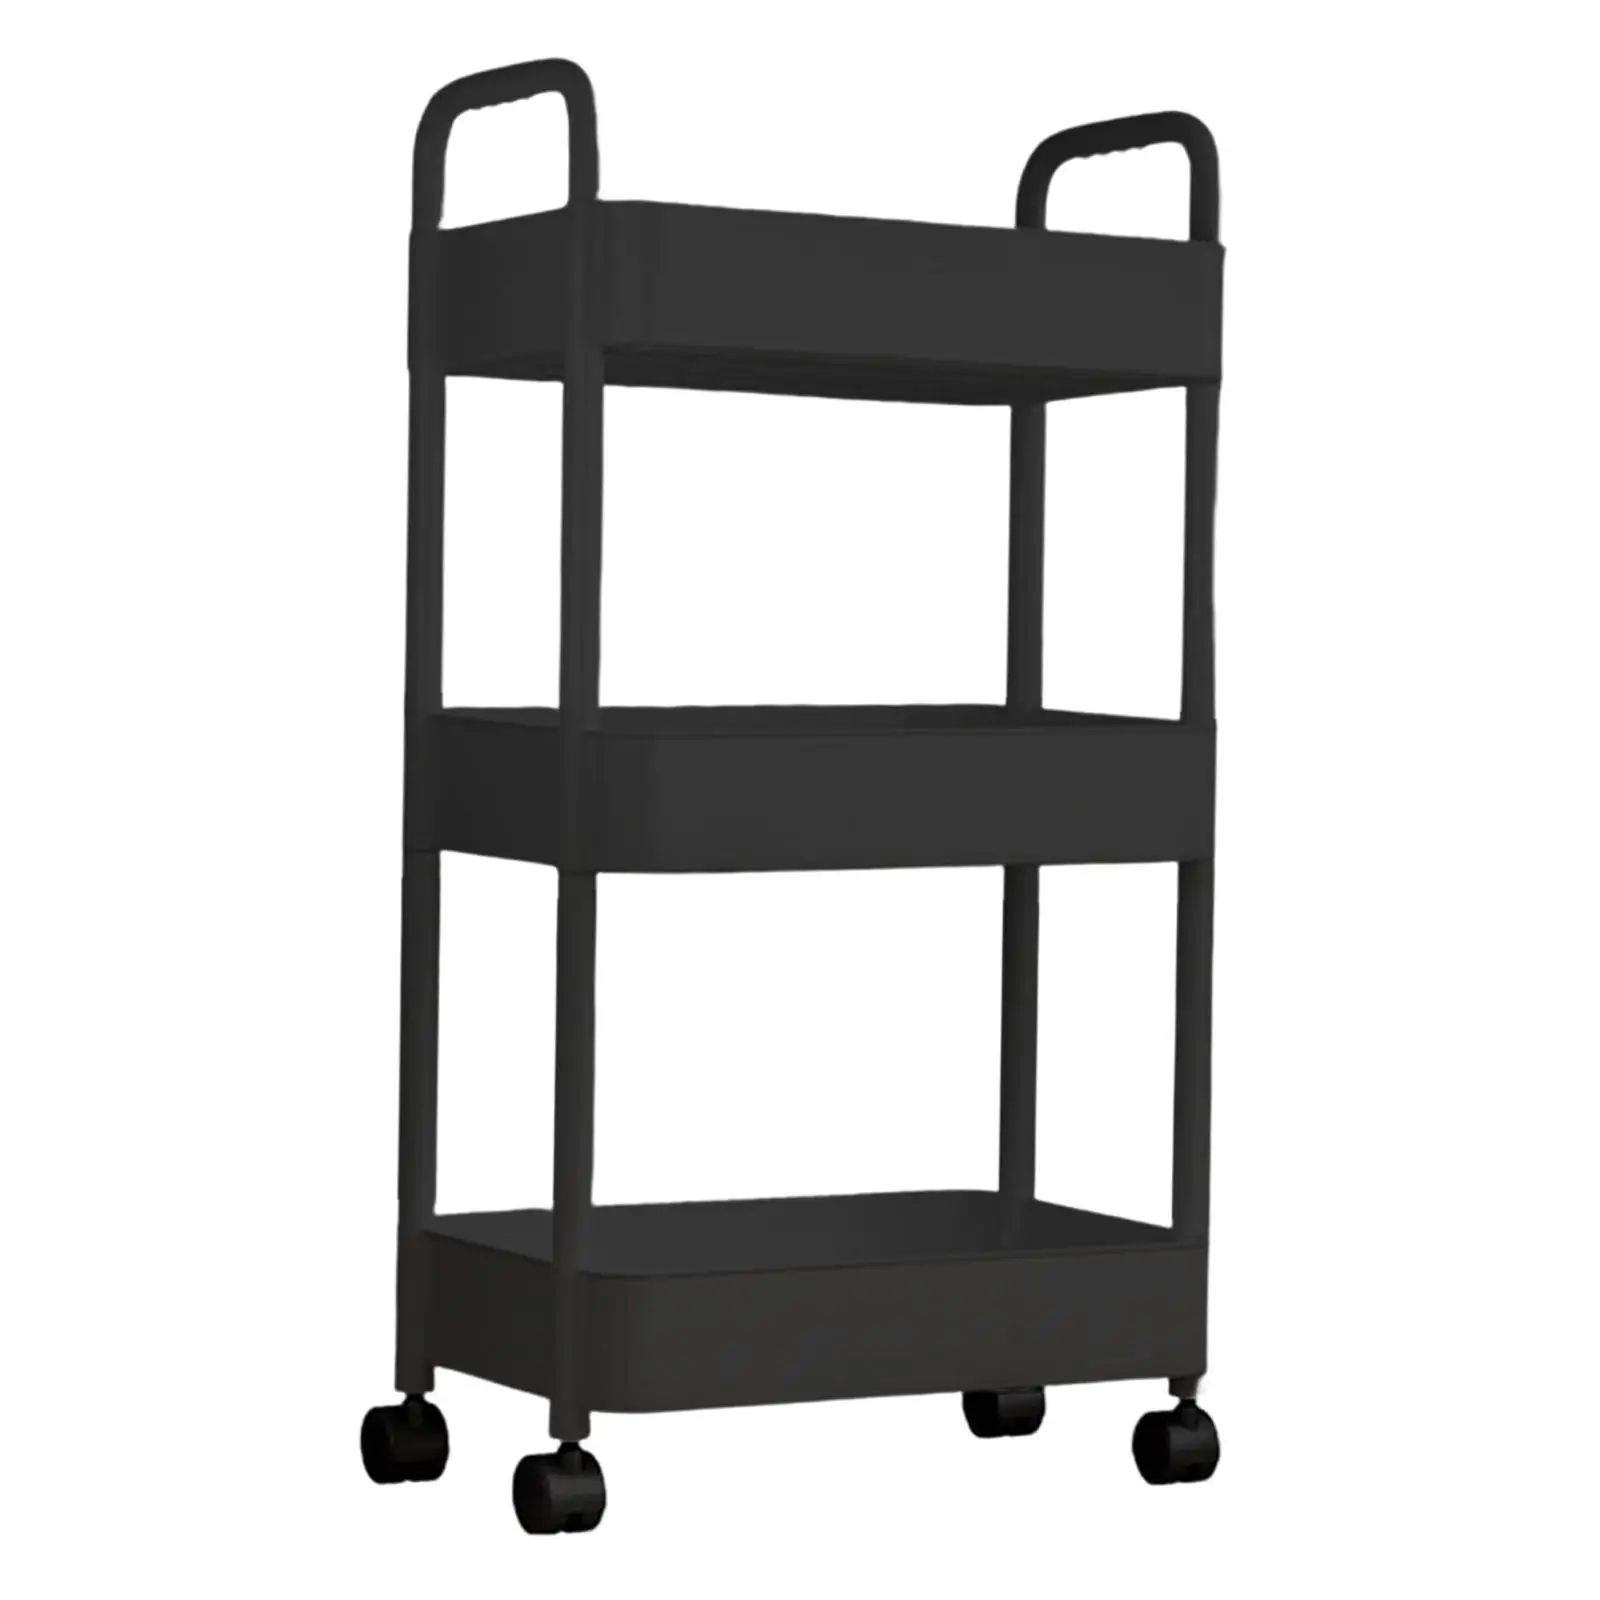 Mobile Utility Cart Utensils Rack Organization Cart for Living Room Office